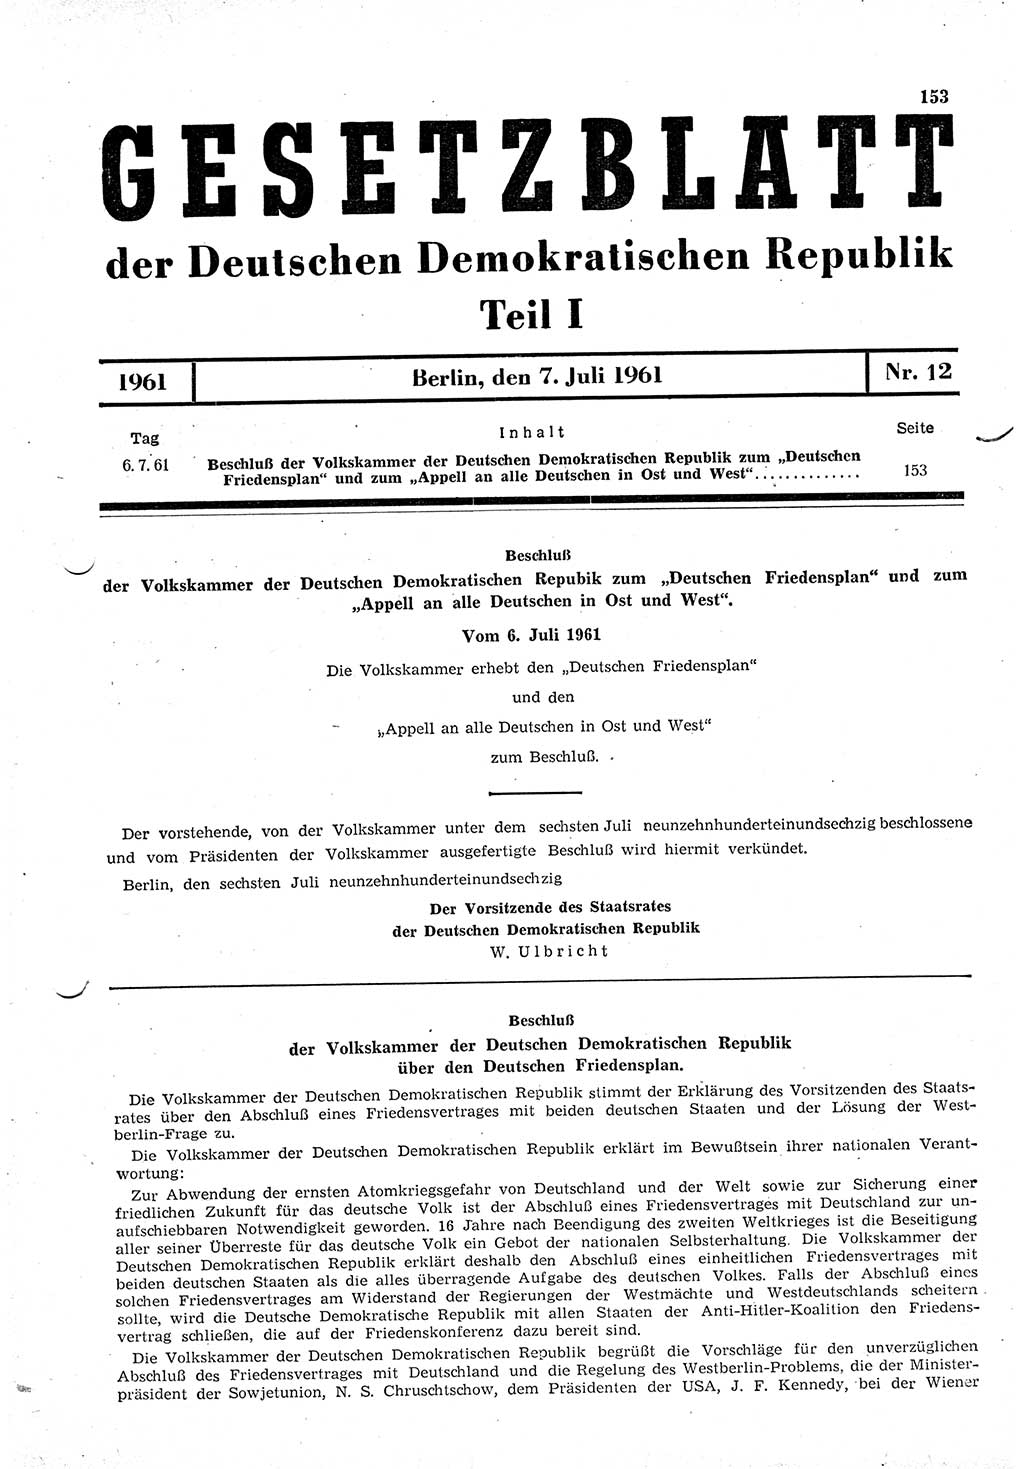 Gesetzblatt (GBl.) der Deutschen Demokratischen Republik (DDR) Teil Ⅰ 1961, Seite 153 (GBl. DDR Ⅰ 1961, S. 153)